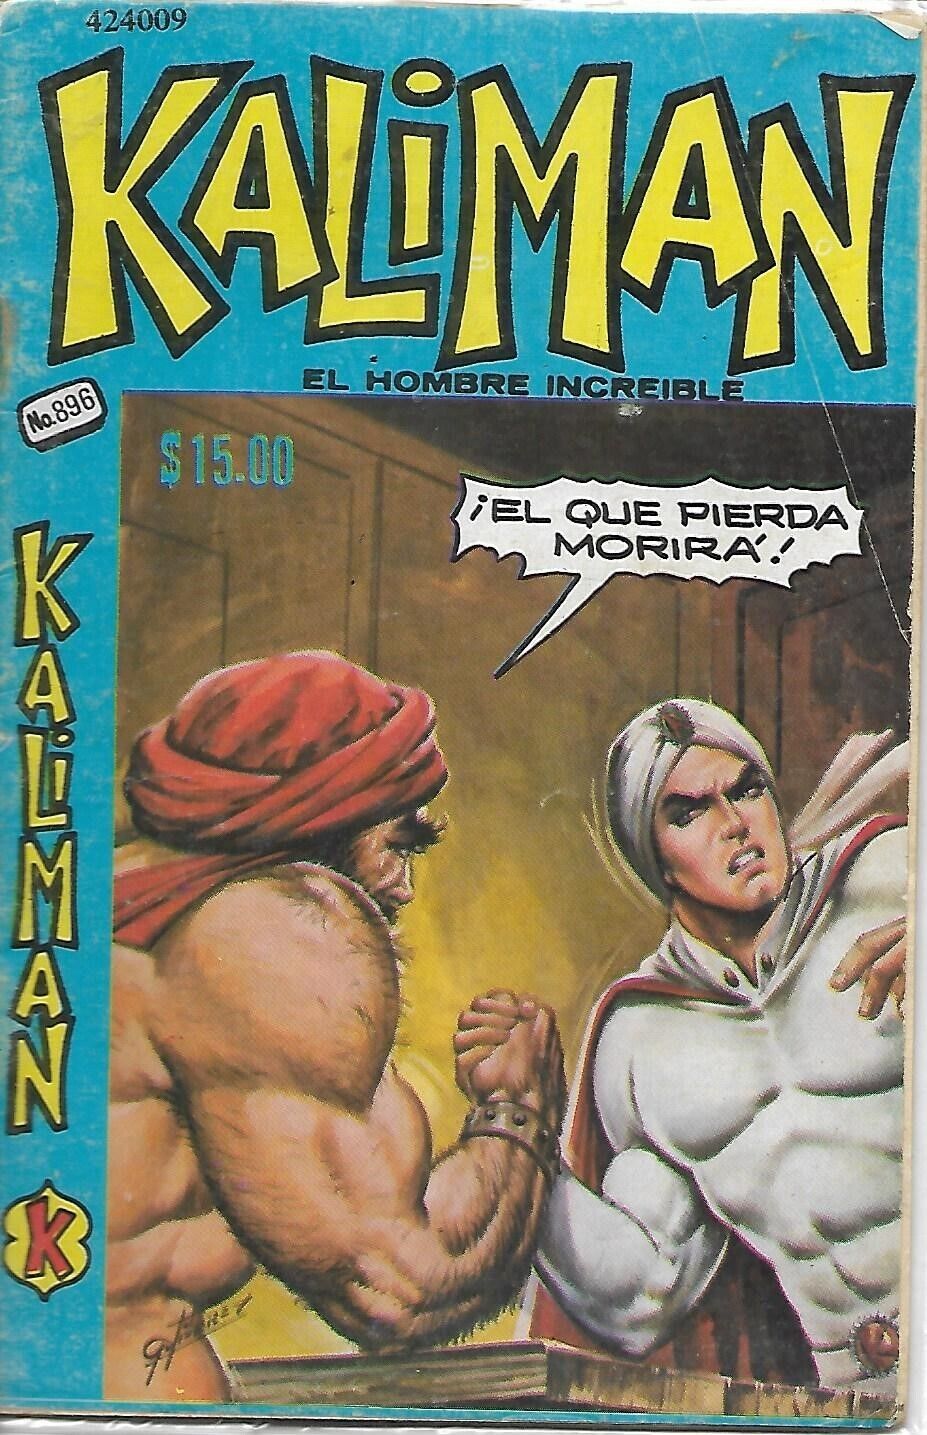 Kaliman El Hombre Increible #896 - Enero 28, 1983 - Mexico